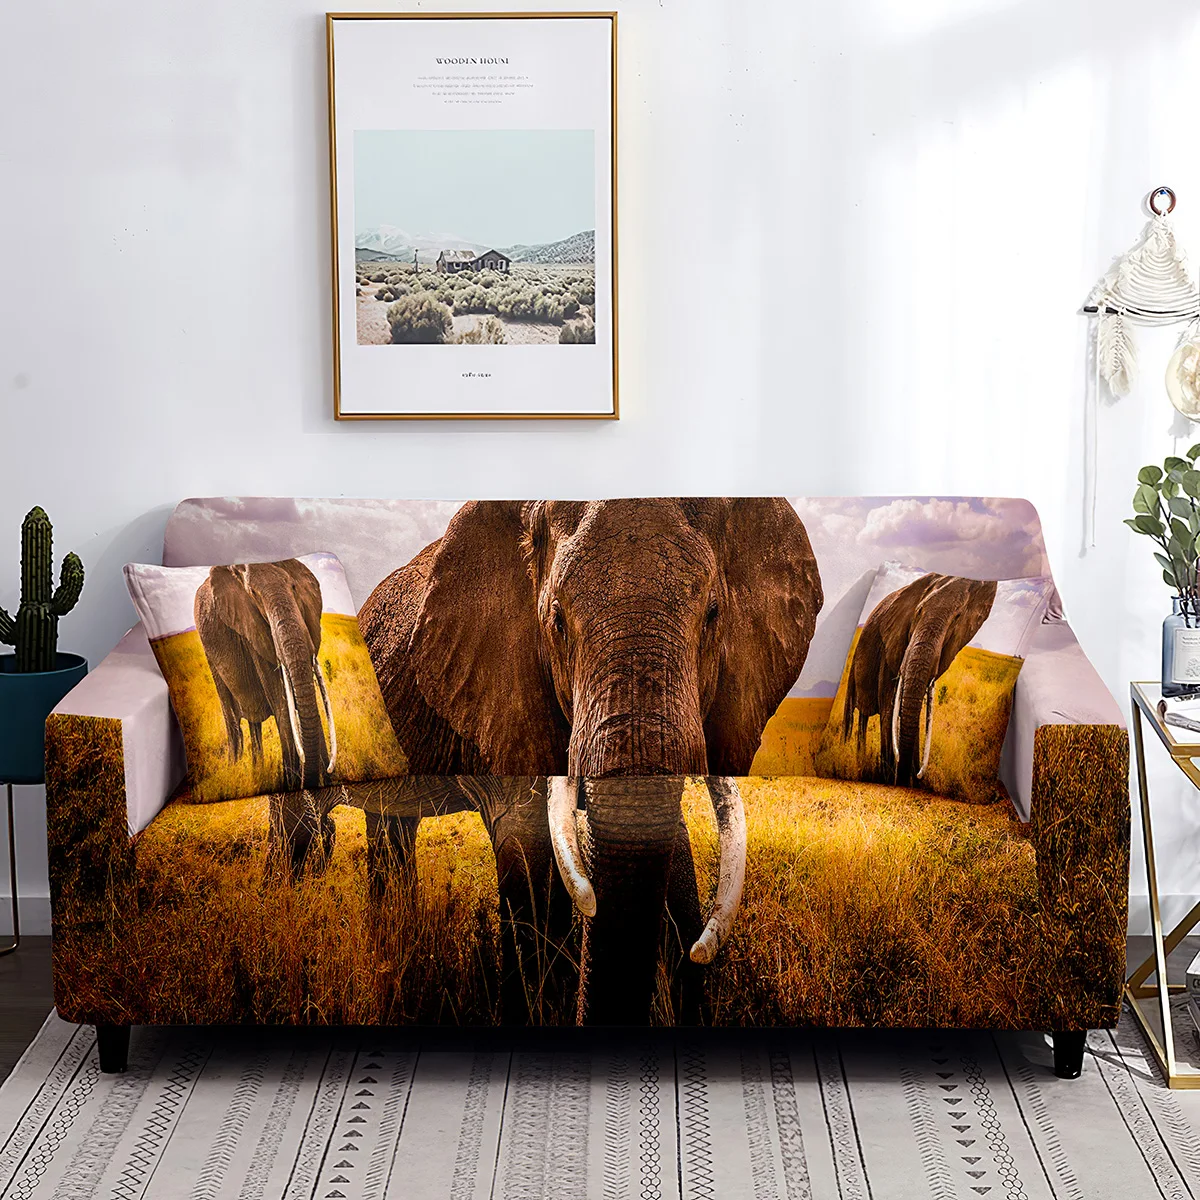 Чехол для дивана с принтом слонов на тему Африканской травы, дикой природы,животных, растягивающийся чехол для подушки, моющийся чехол для дивана,защита от пыли